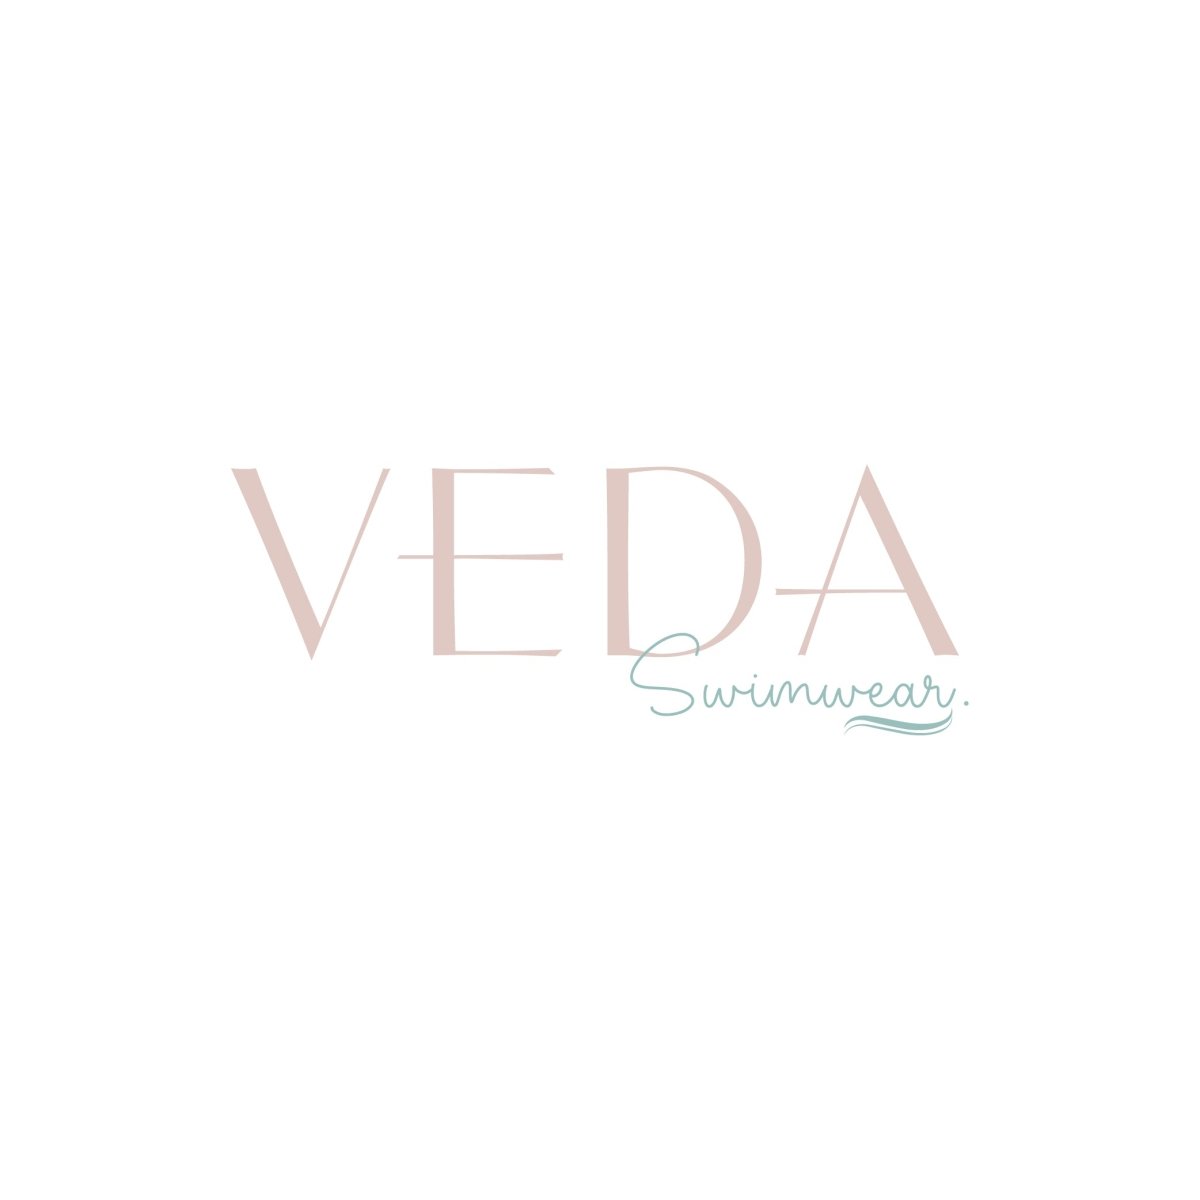 "Veda Swimwear - Where Sensuality Meets Sustainability" - Veda Swimwear